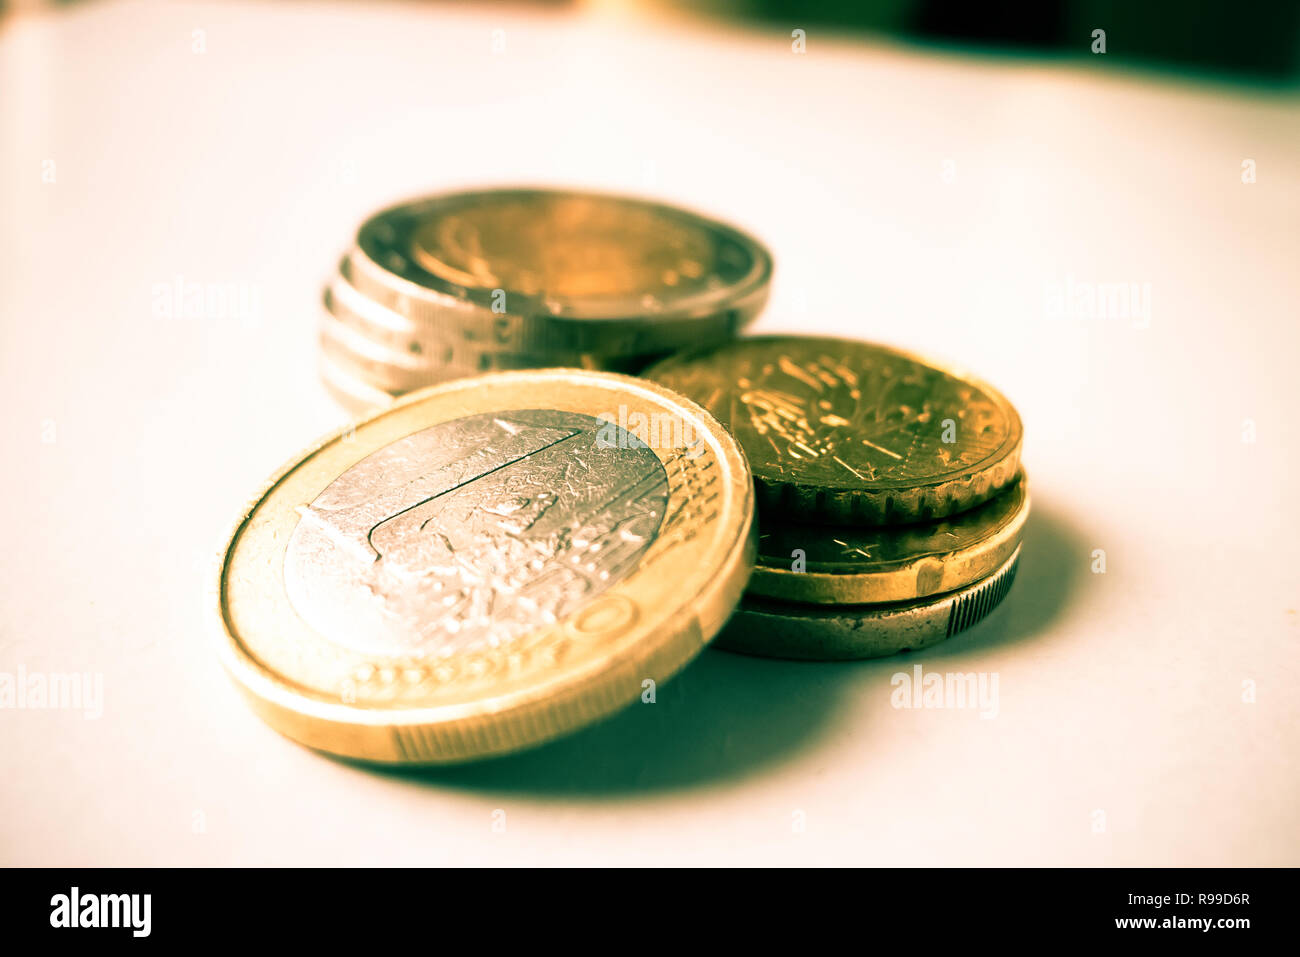 euro coins on white background Stock Photo